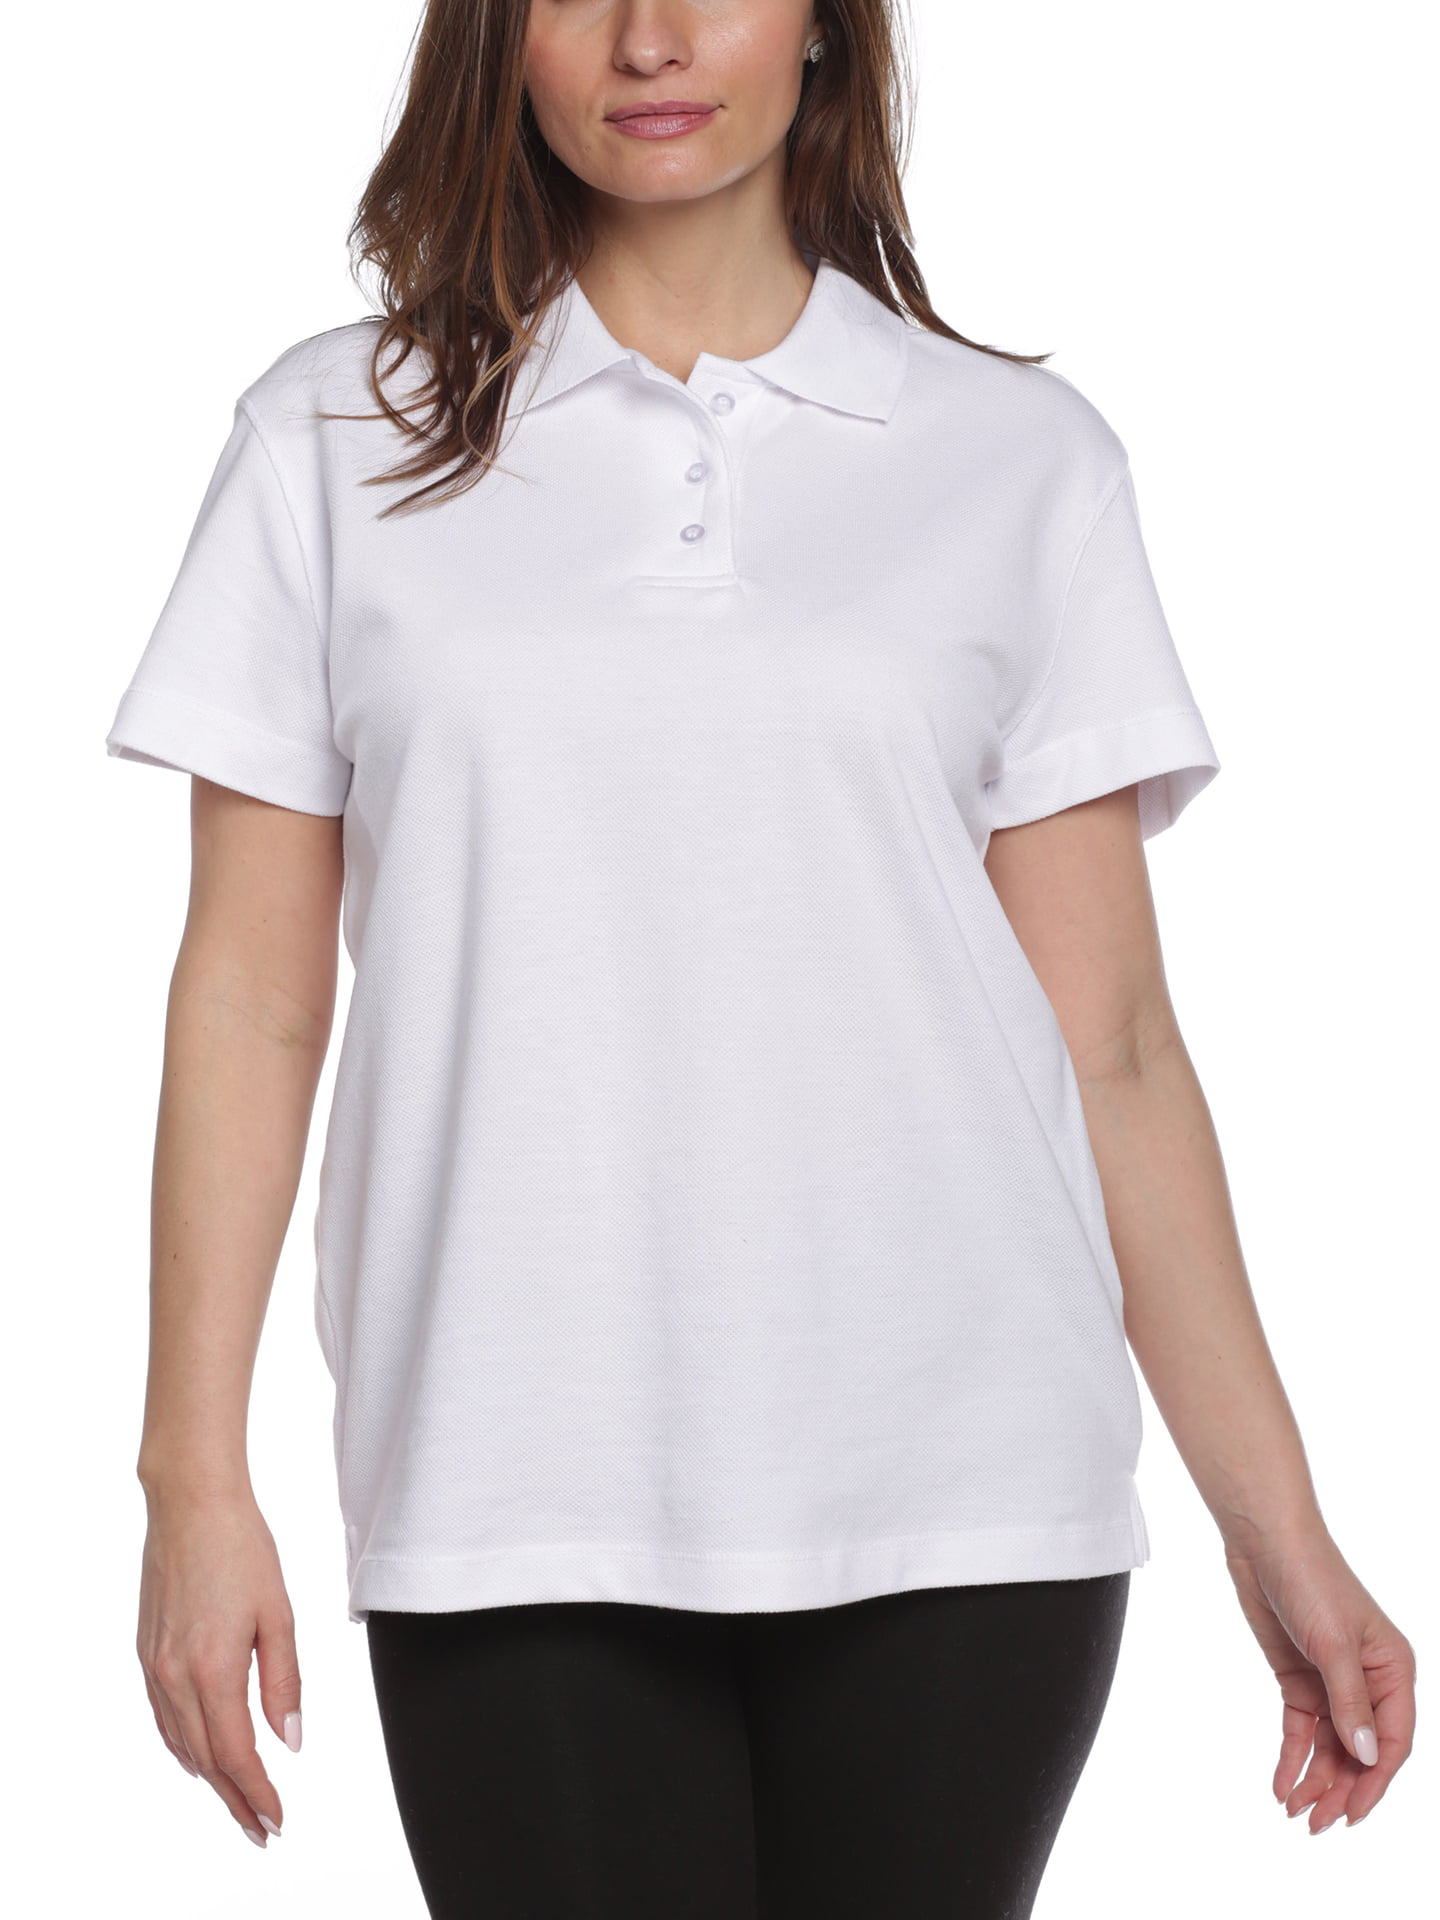 Erika Erika Women S Leslie Pique Short Sleeve Polo Shirt White Xlarge